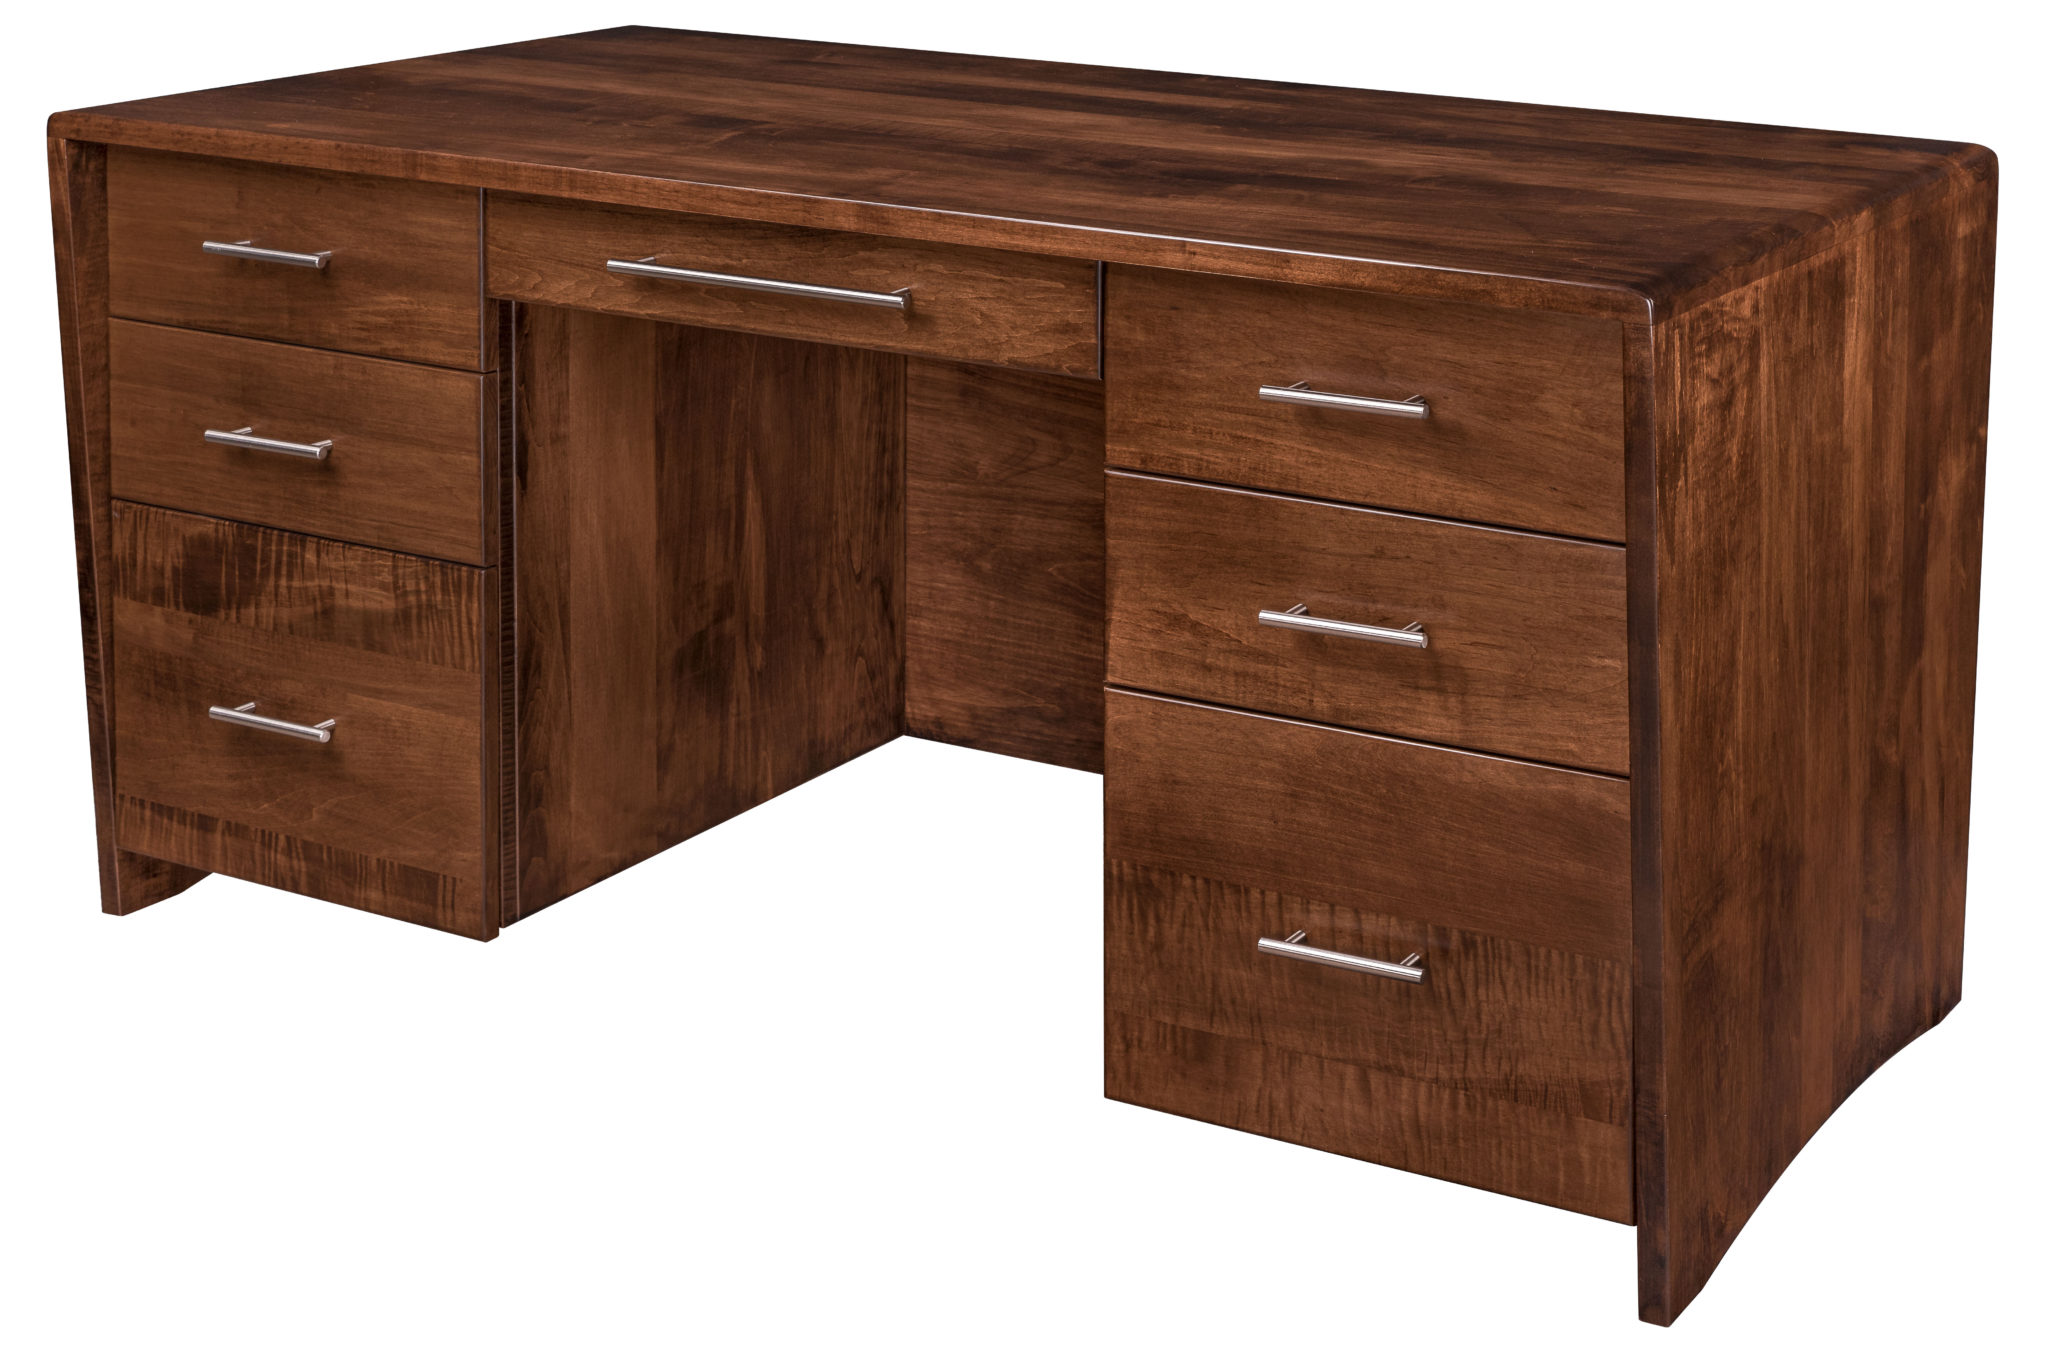 Nova Executive Desk Amish Solid Wood Desks Kvadro Furniture